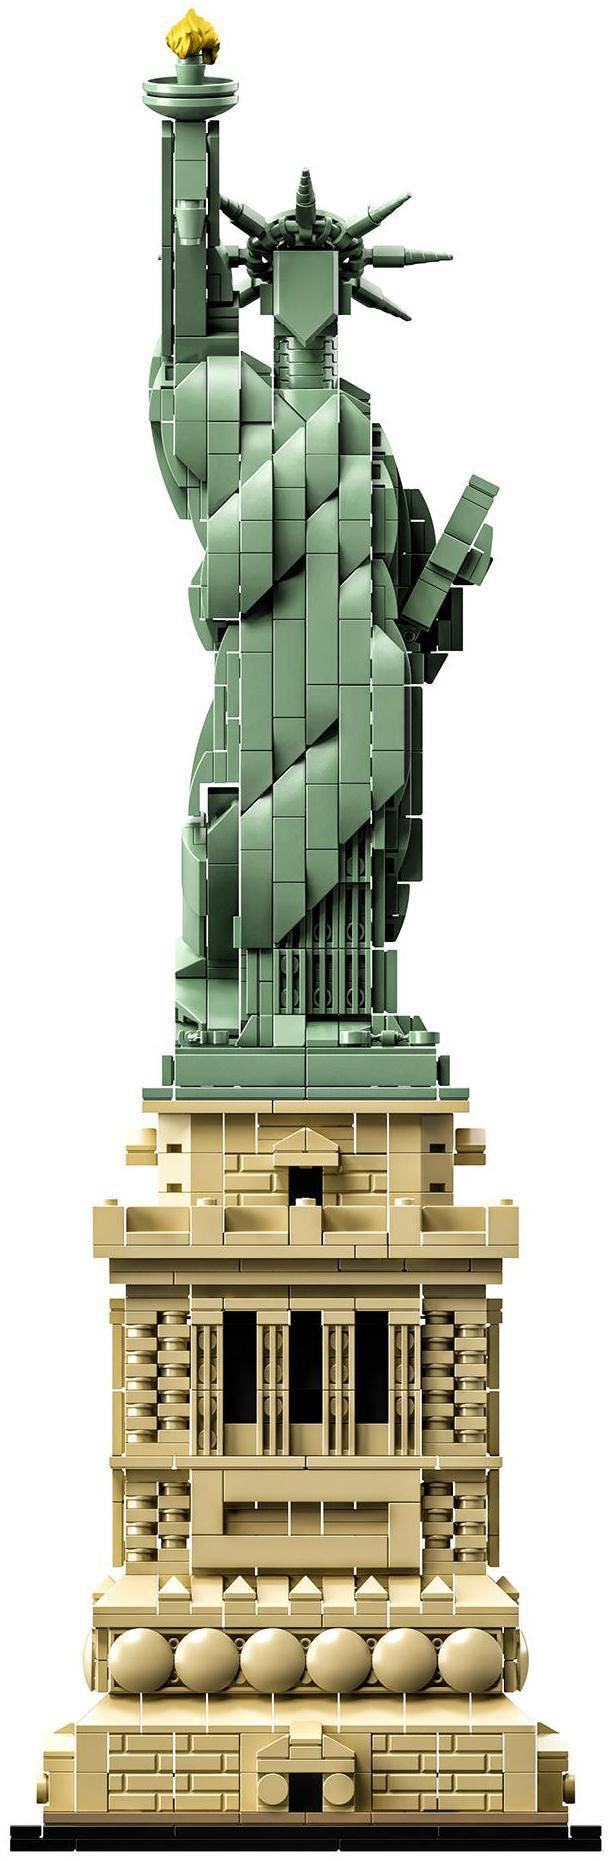 LEGO® Konstruktionsspielsteine »Freiheitsstatue (21042), LEGO® Architecture«, (1685 St.), Made in Europe